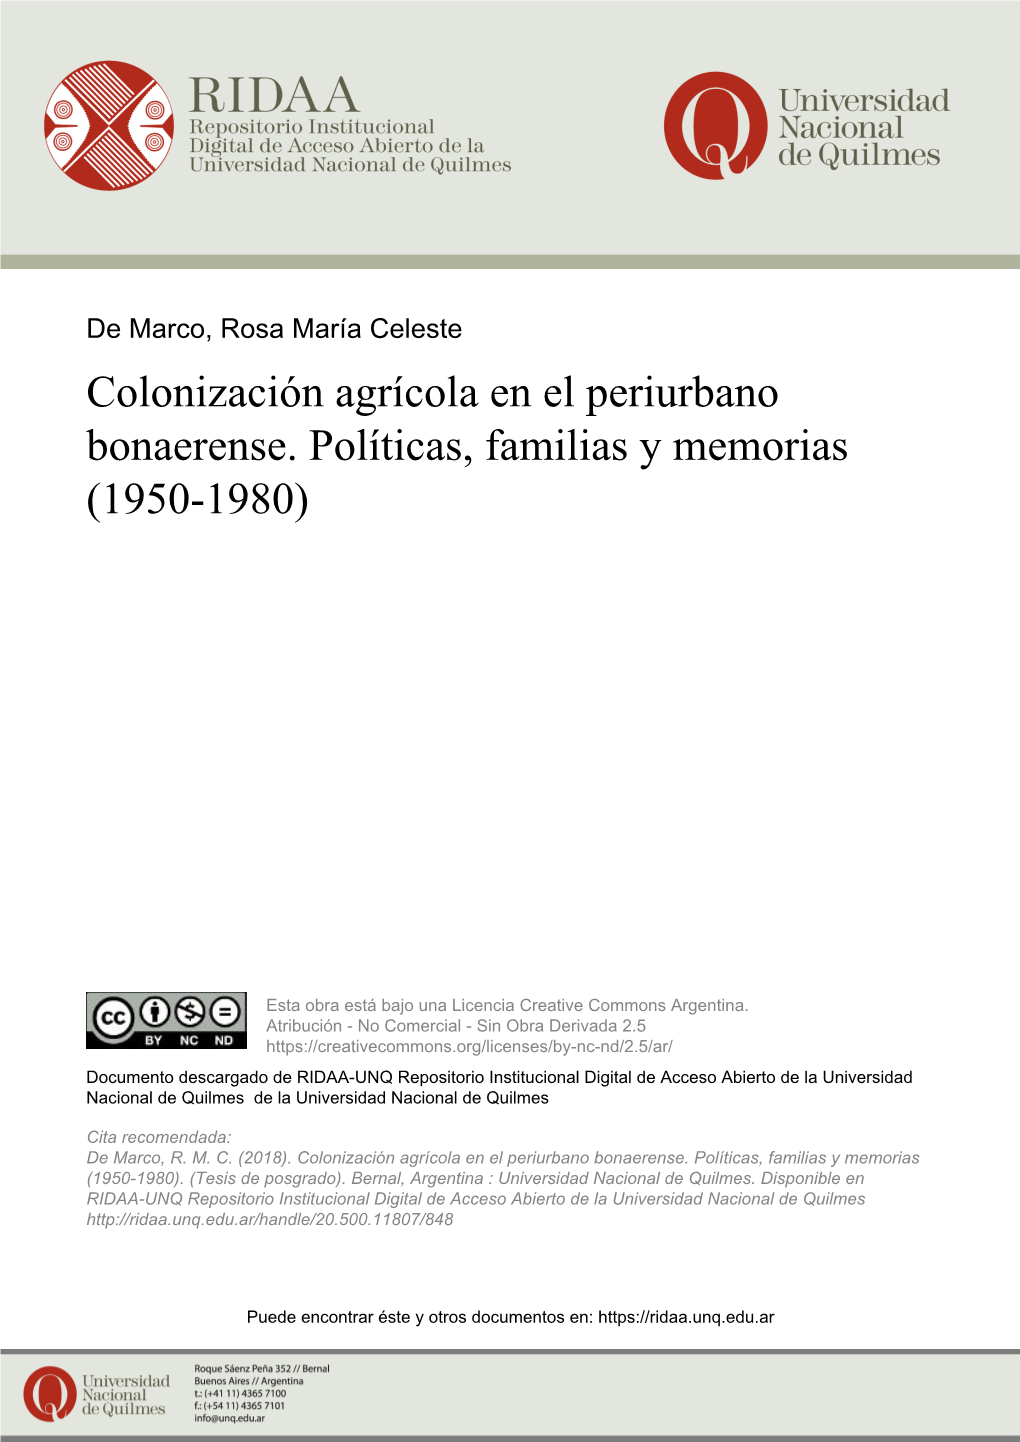 Colonización Agrícola En El Periurbano Bonaerense. Políticas, Familias Y Memorias (1950-1980)